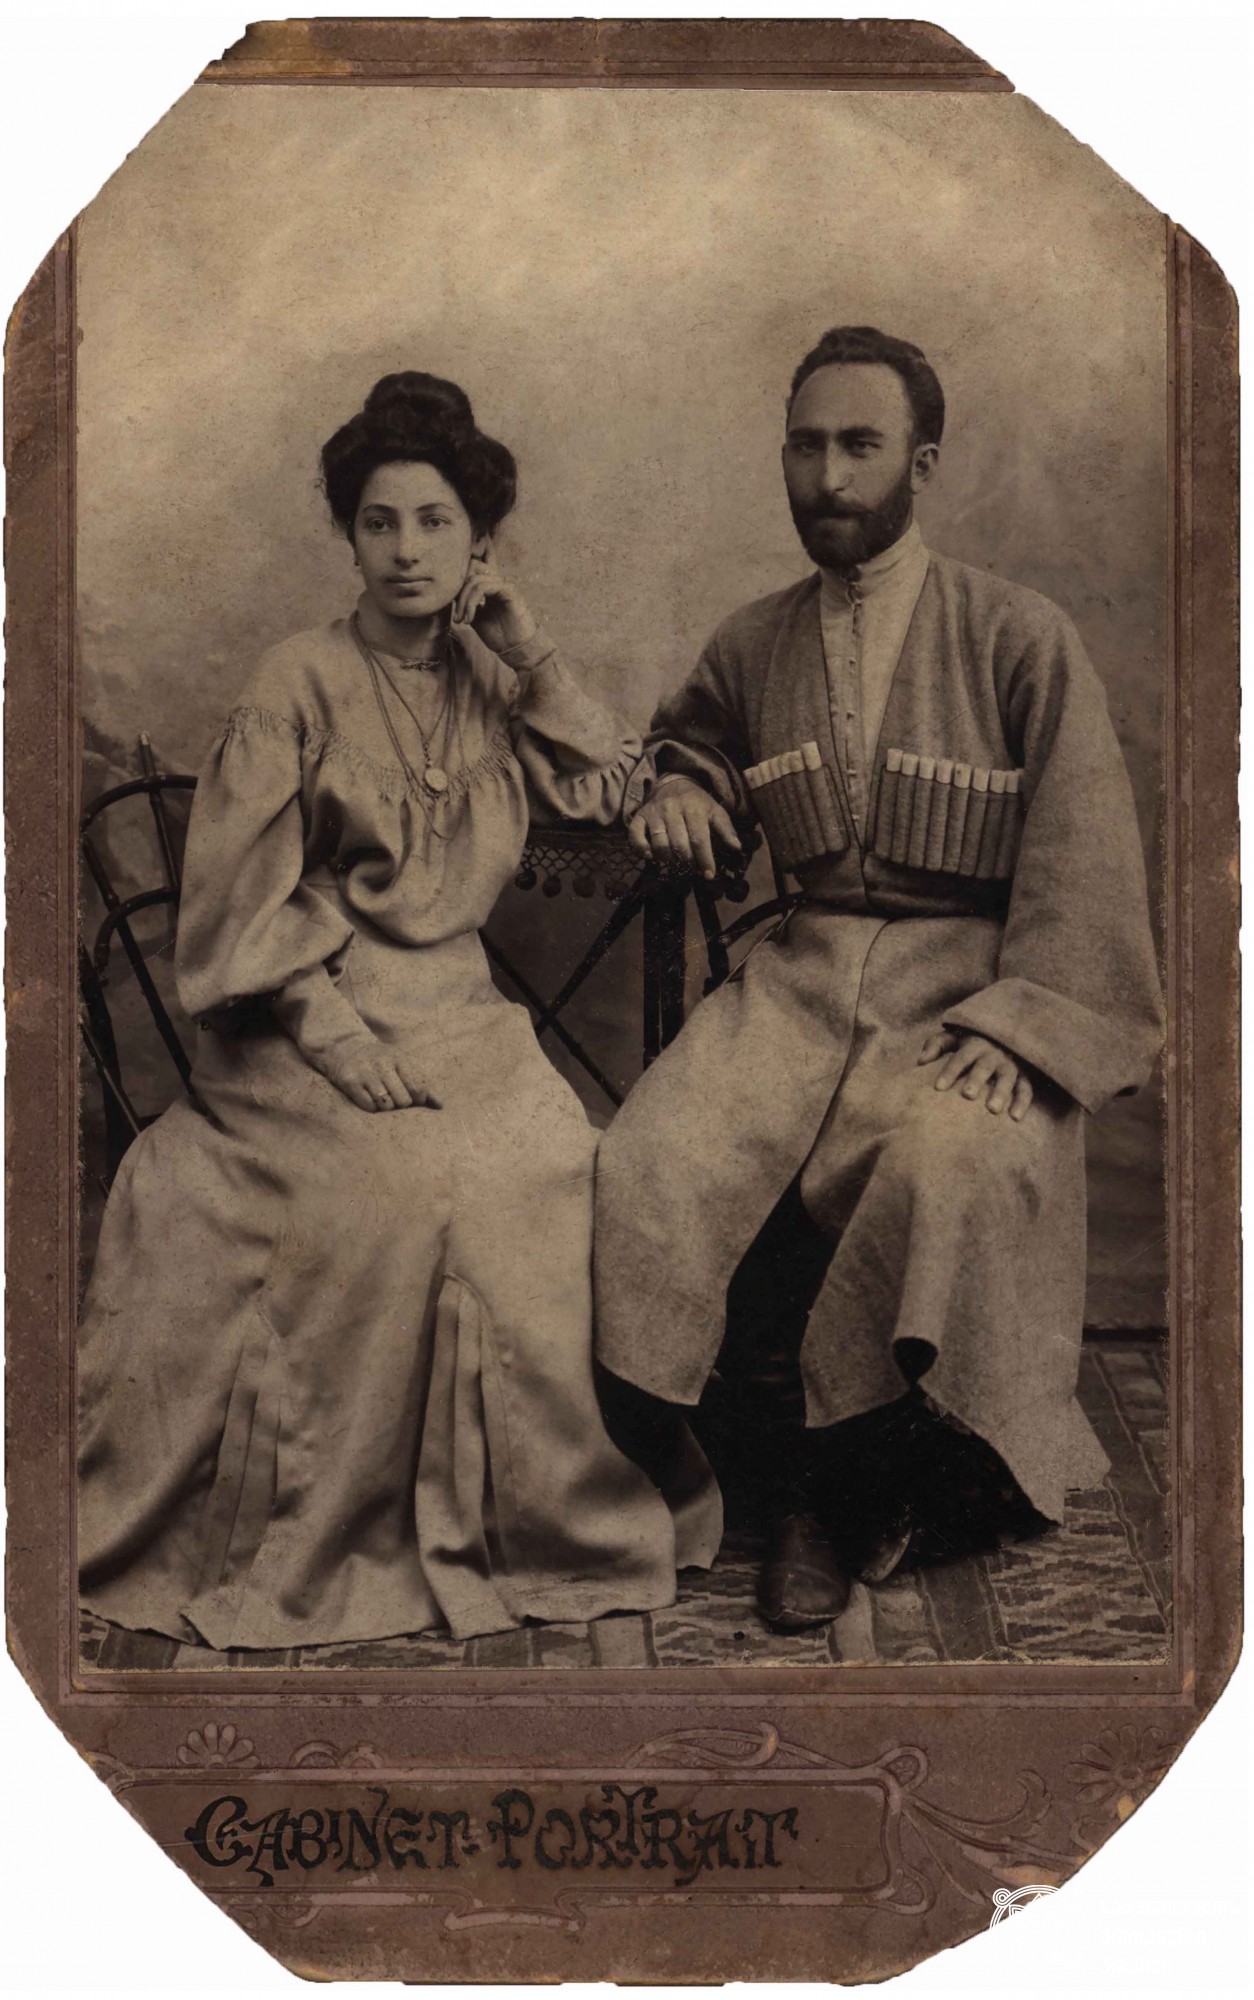 ახლადდაქორწინებულები - მარო თარხნიშვილი და დიმიტრი თარხან-მოურავი
<br>1905 წელი